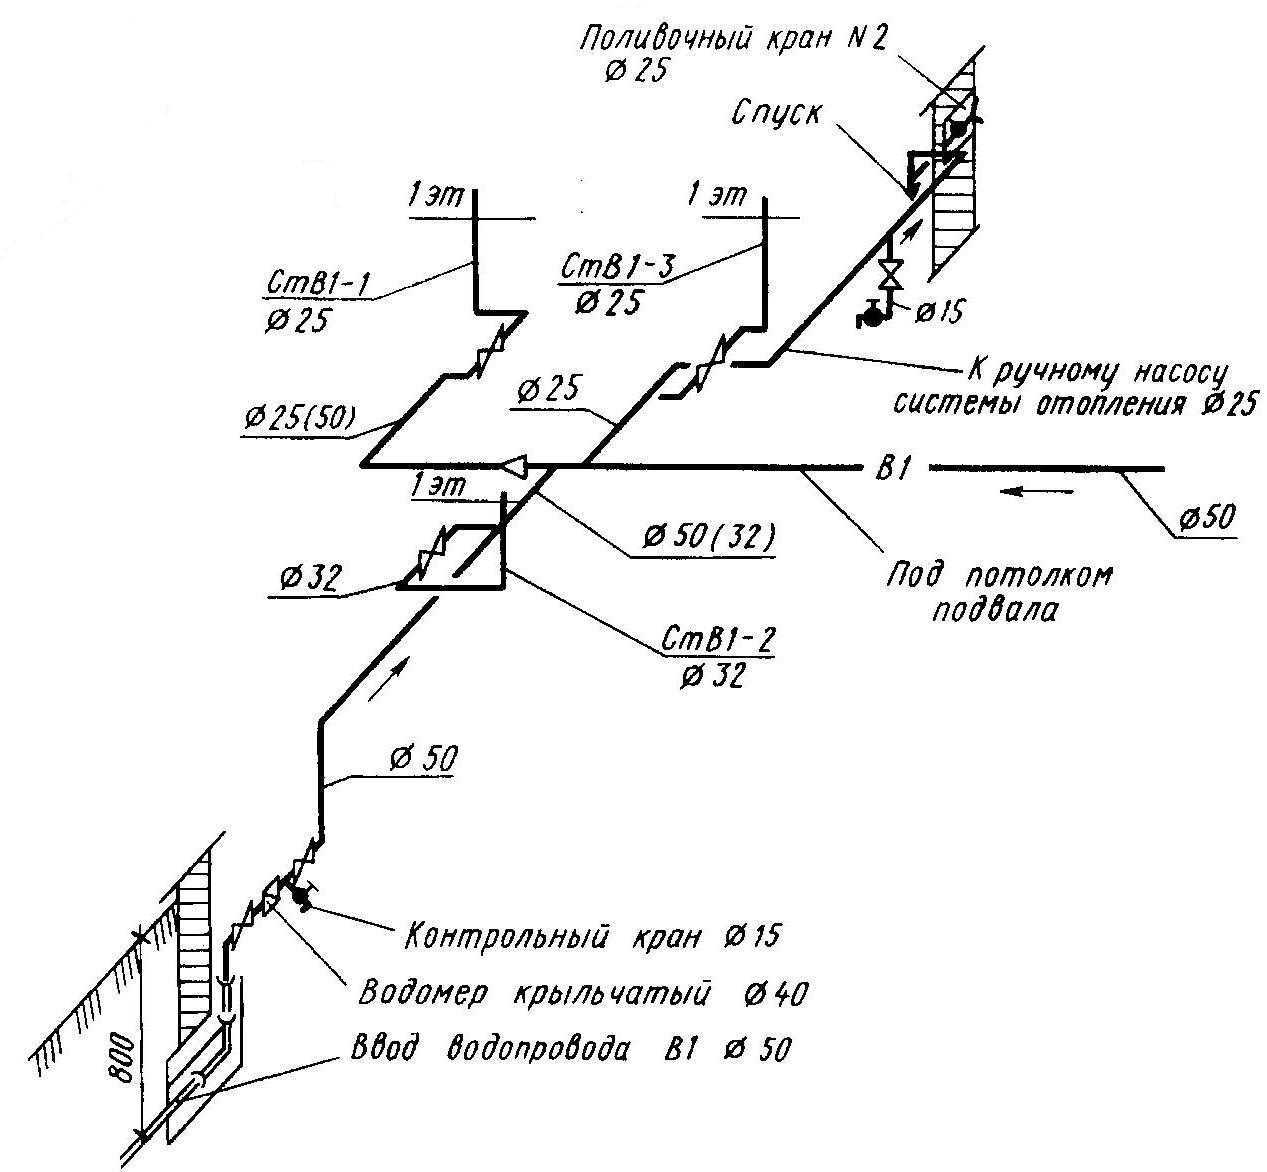 Аксонометрическая схема водопровода служит основанием для выполнения гидравлического расчета системы По ней определяются участки магистрали с постоянным расходом воды Узловыми точками считаются участки ответвления трубопроводов от стояков К схеме составля